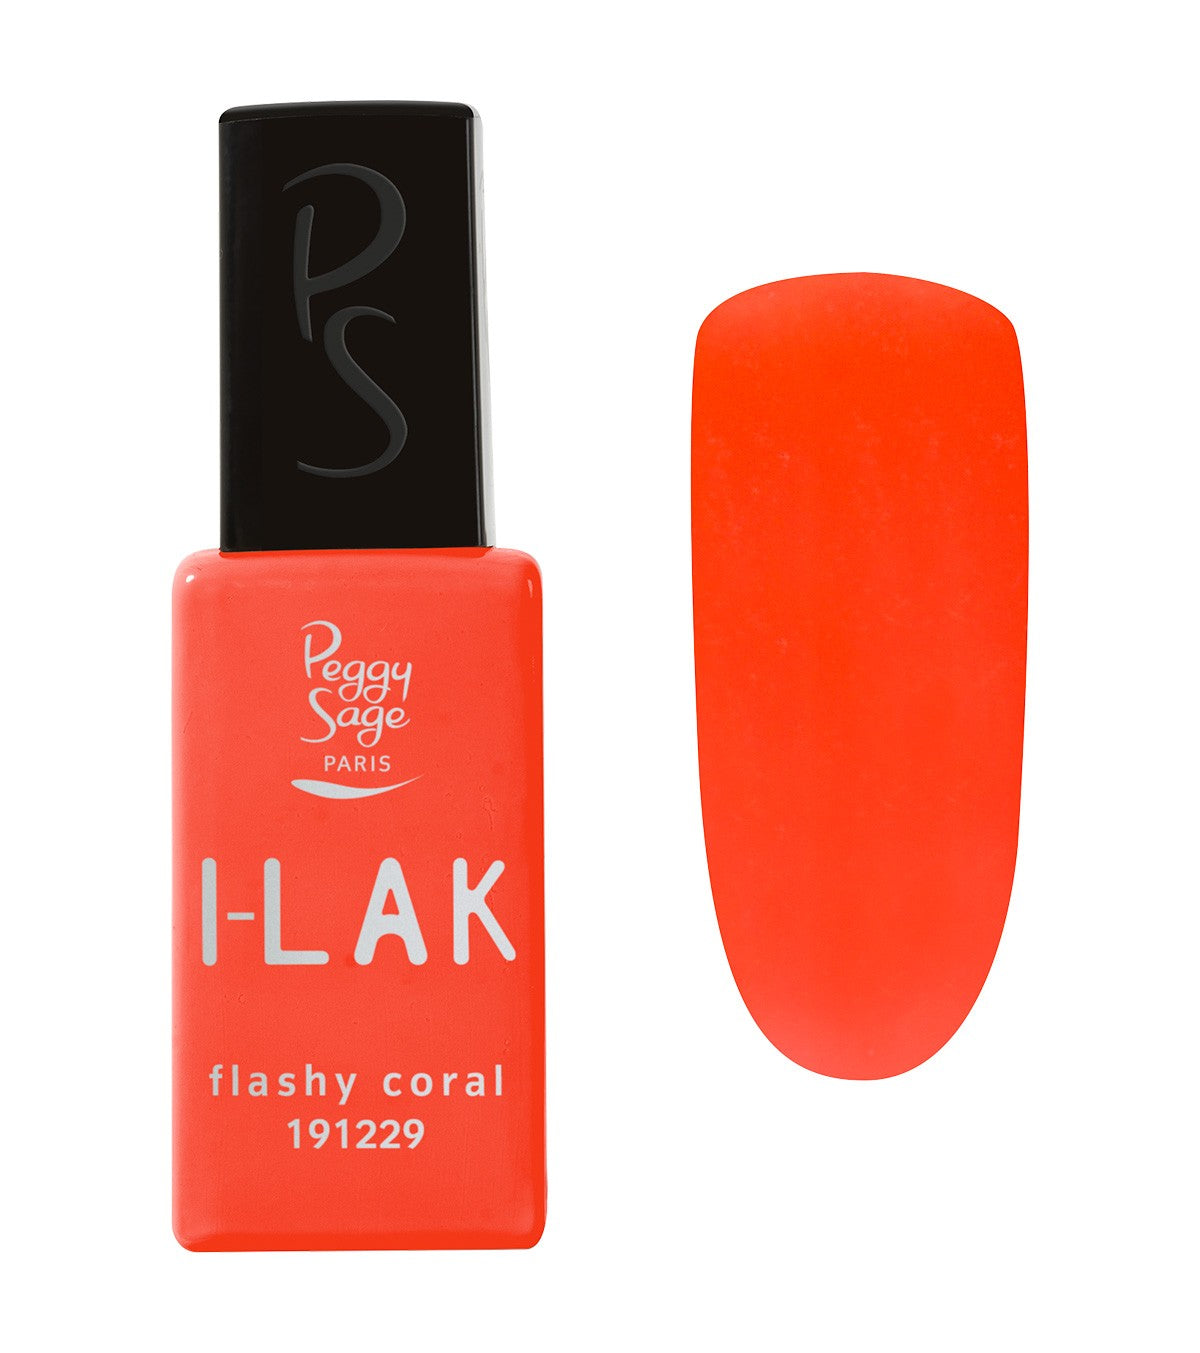 I-LAK Flashy Coral Ref 191229